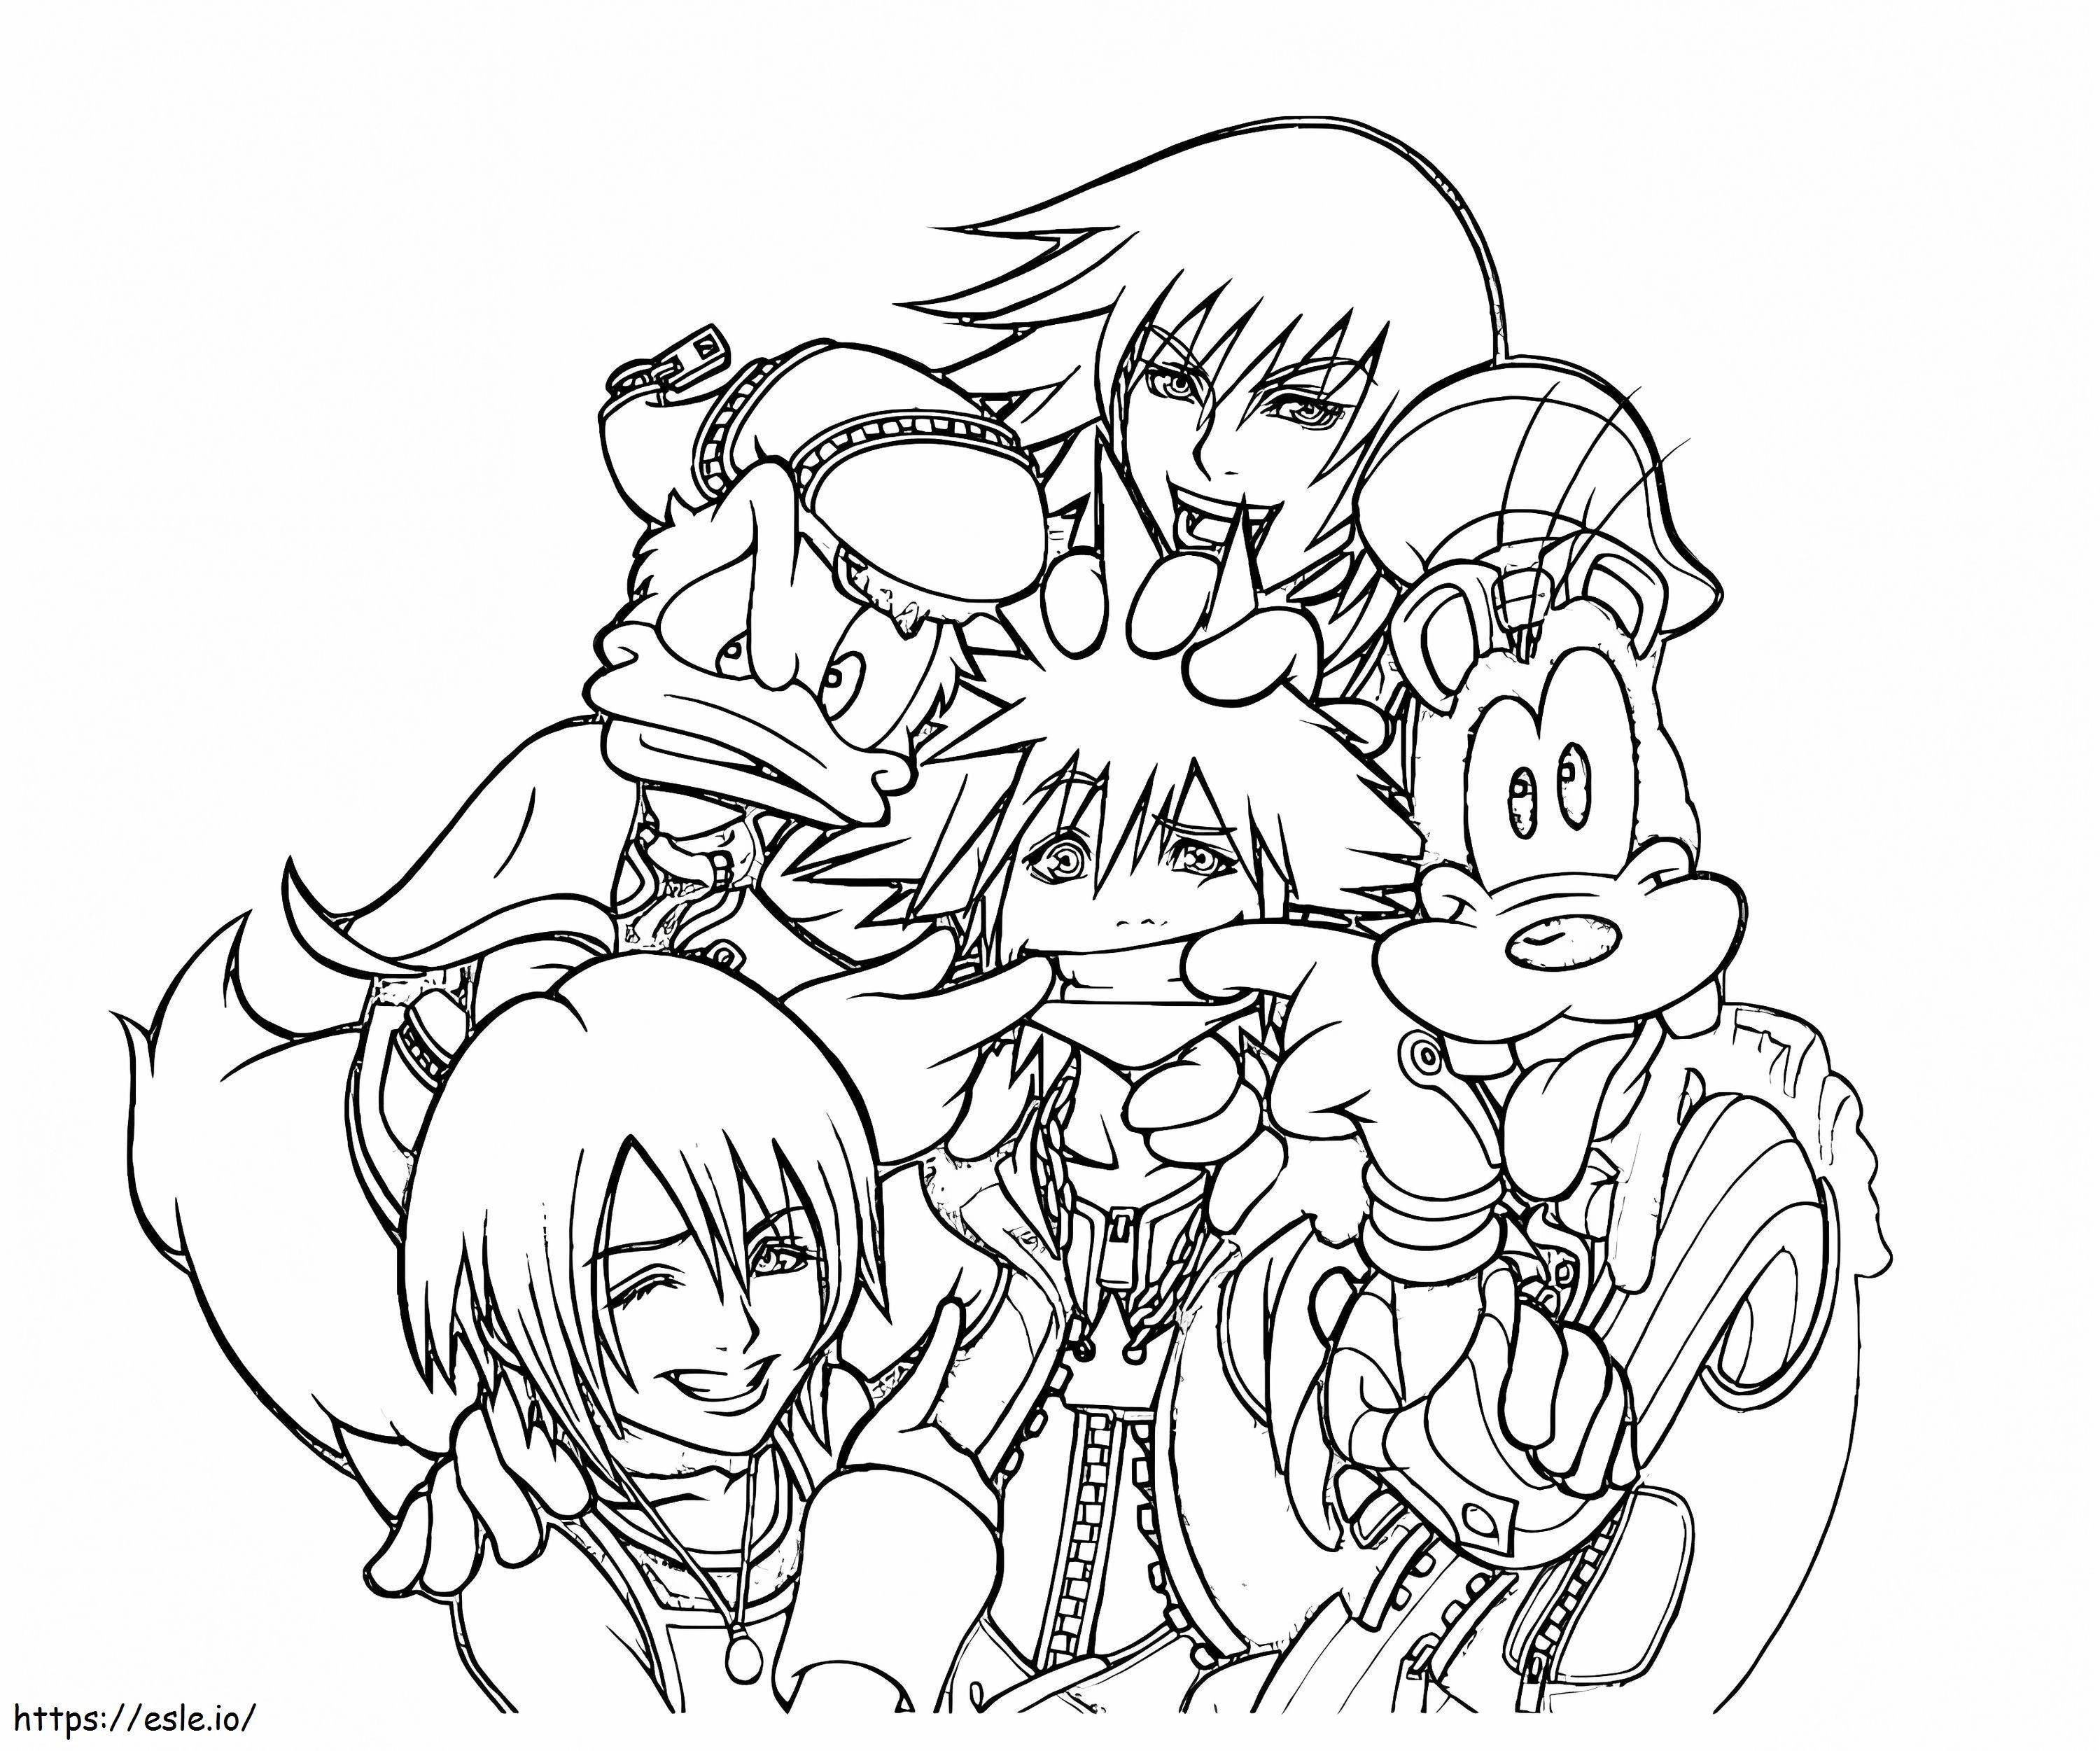 Śmieszne postacie z Kingdom Hearts kolorowanka